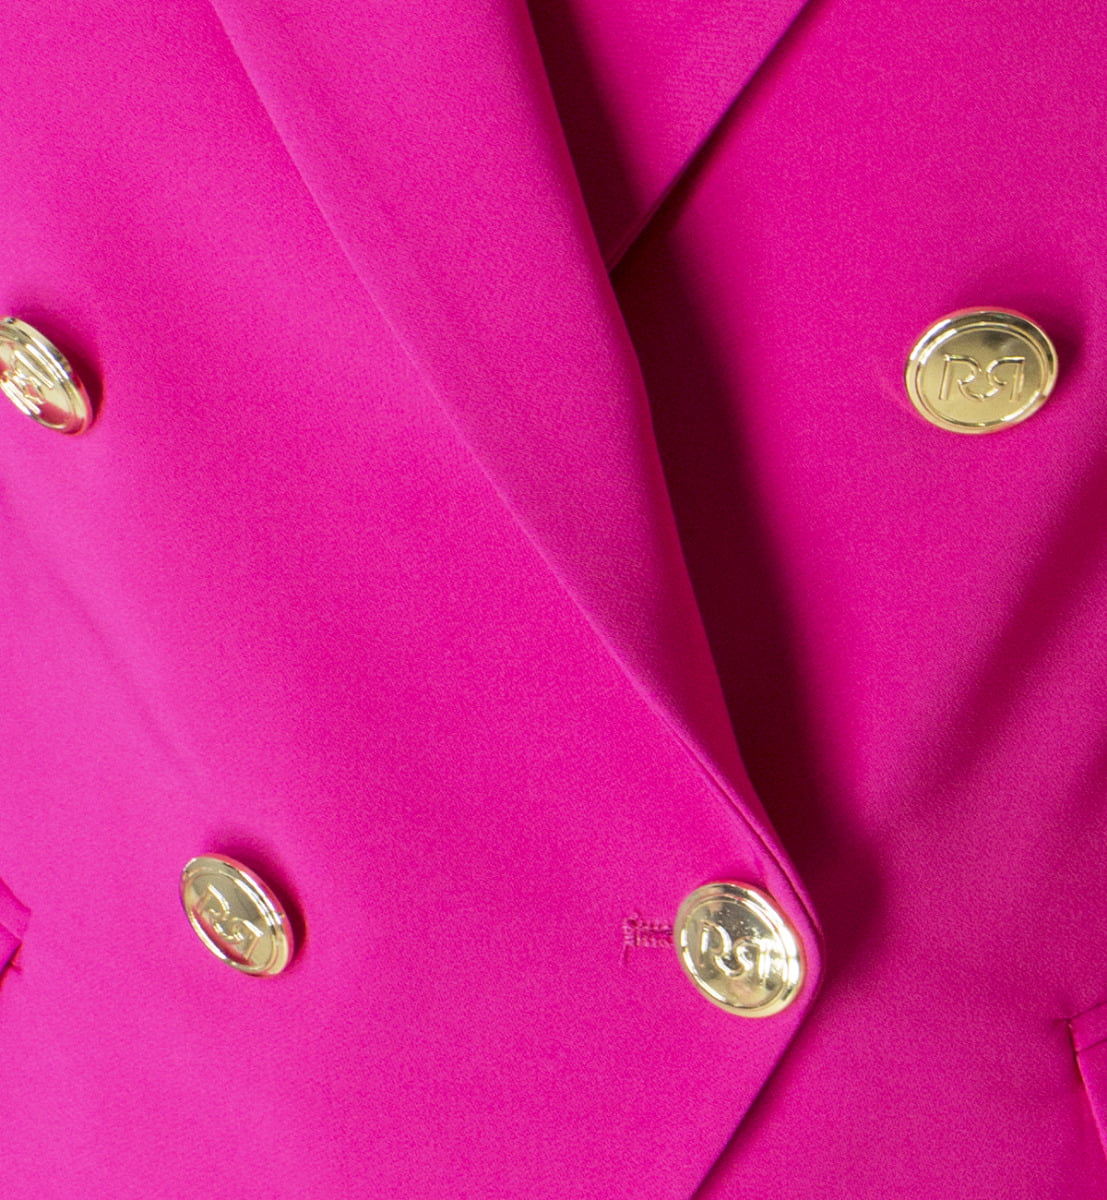 Giacca donna doppiopetto stretta in vita e bottoni in oro specchio logati con spallina e tasca a toppa